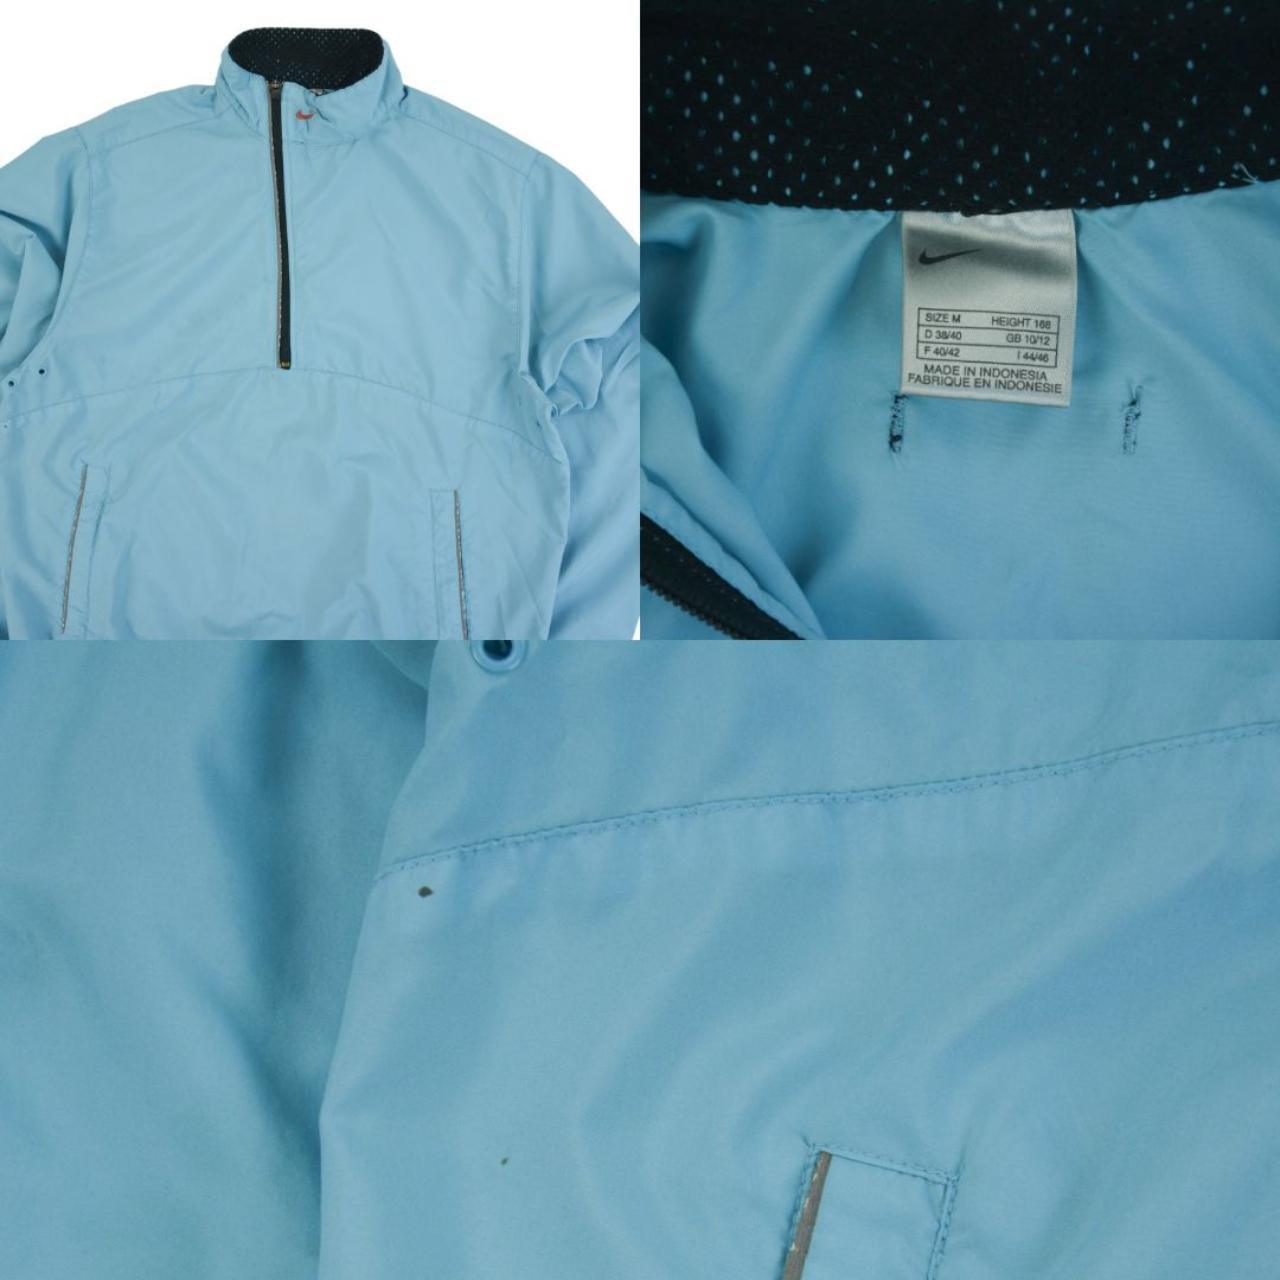 Vintage Nike Asymmetric Q Zip Jacket Size XS - Known Source